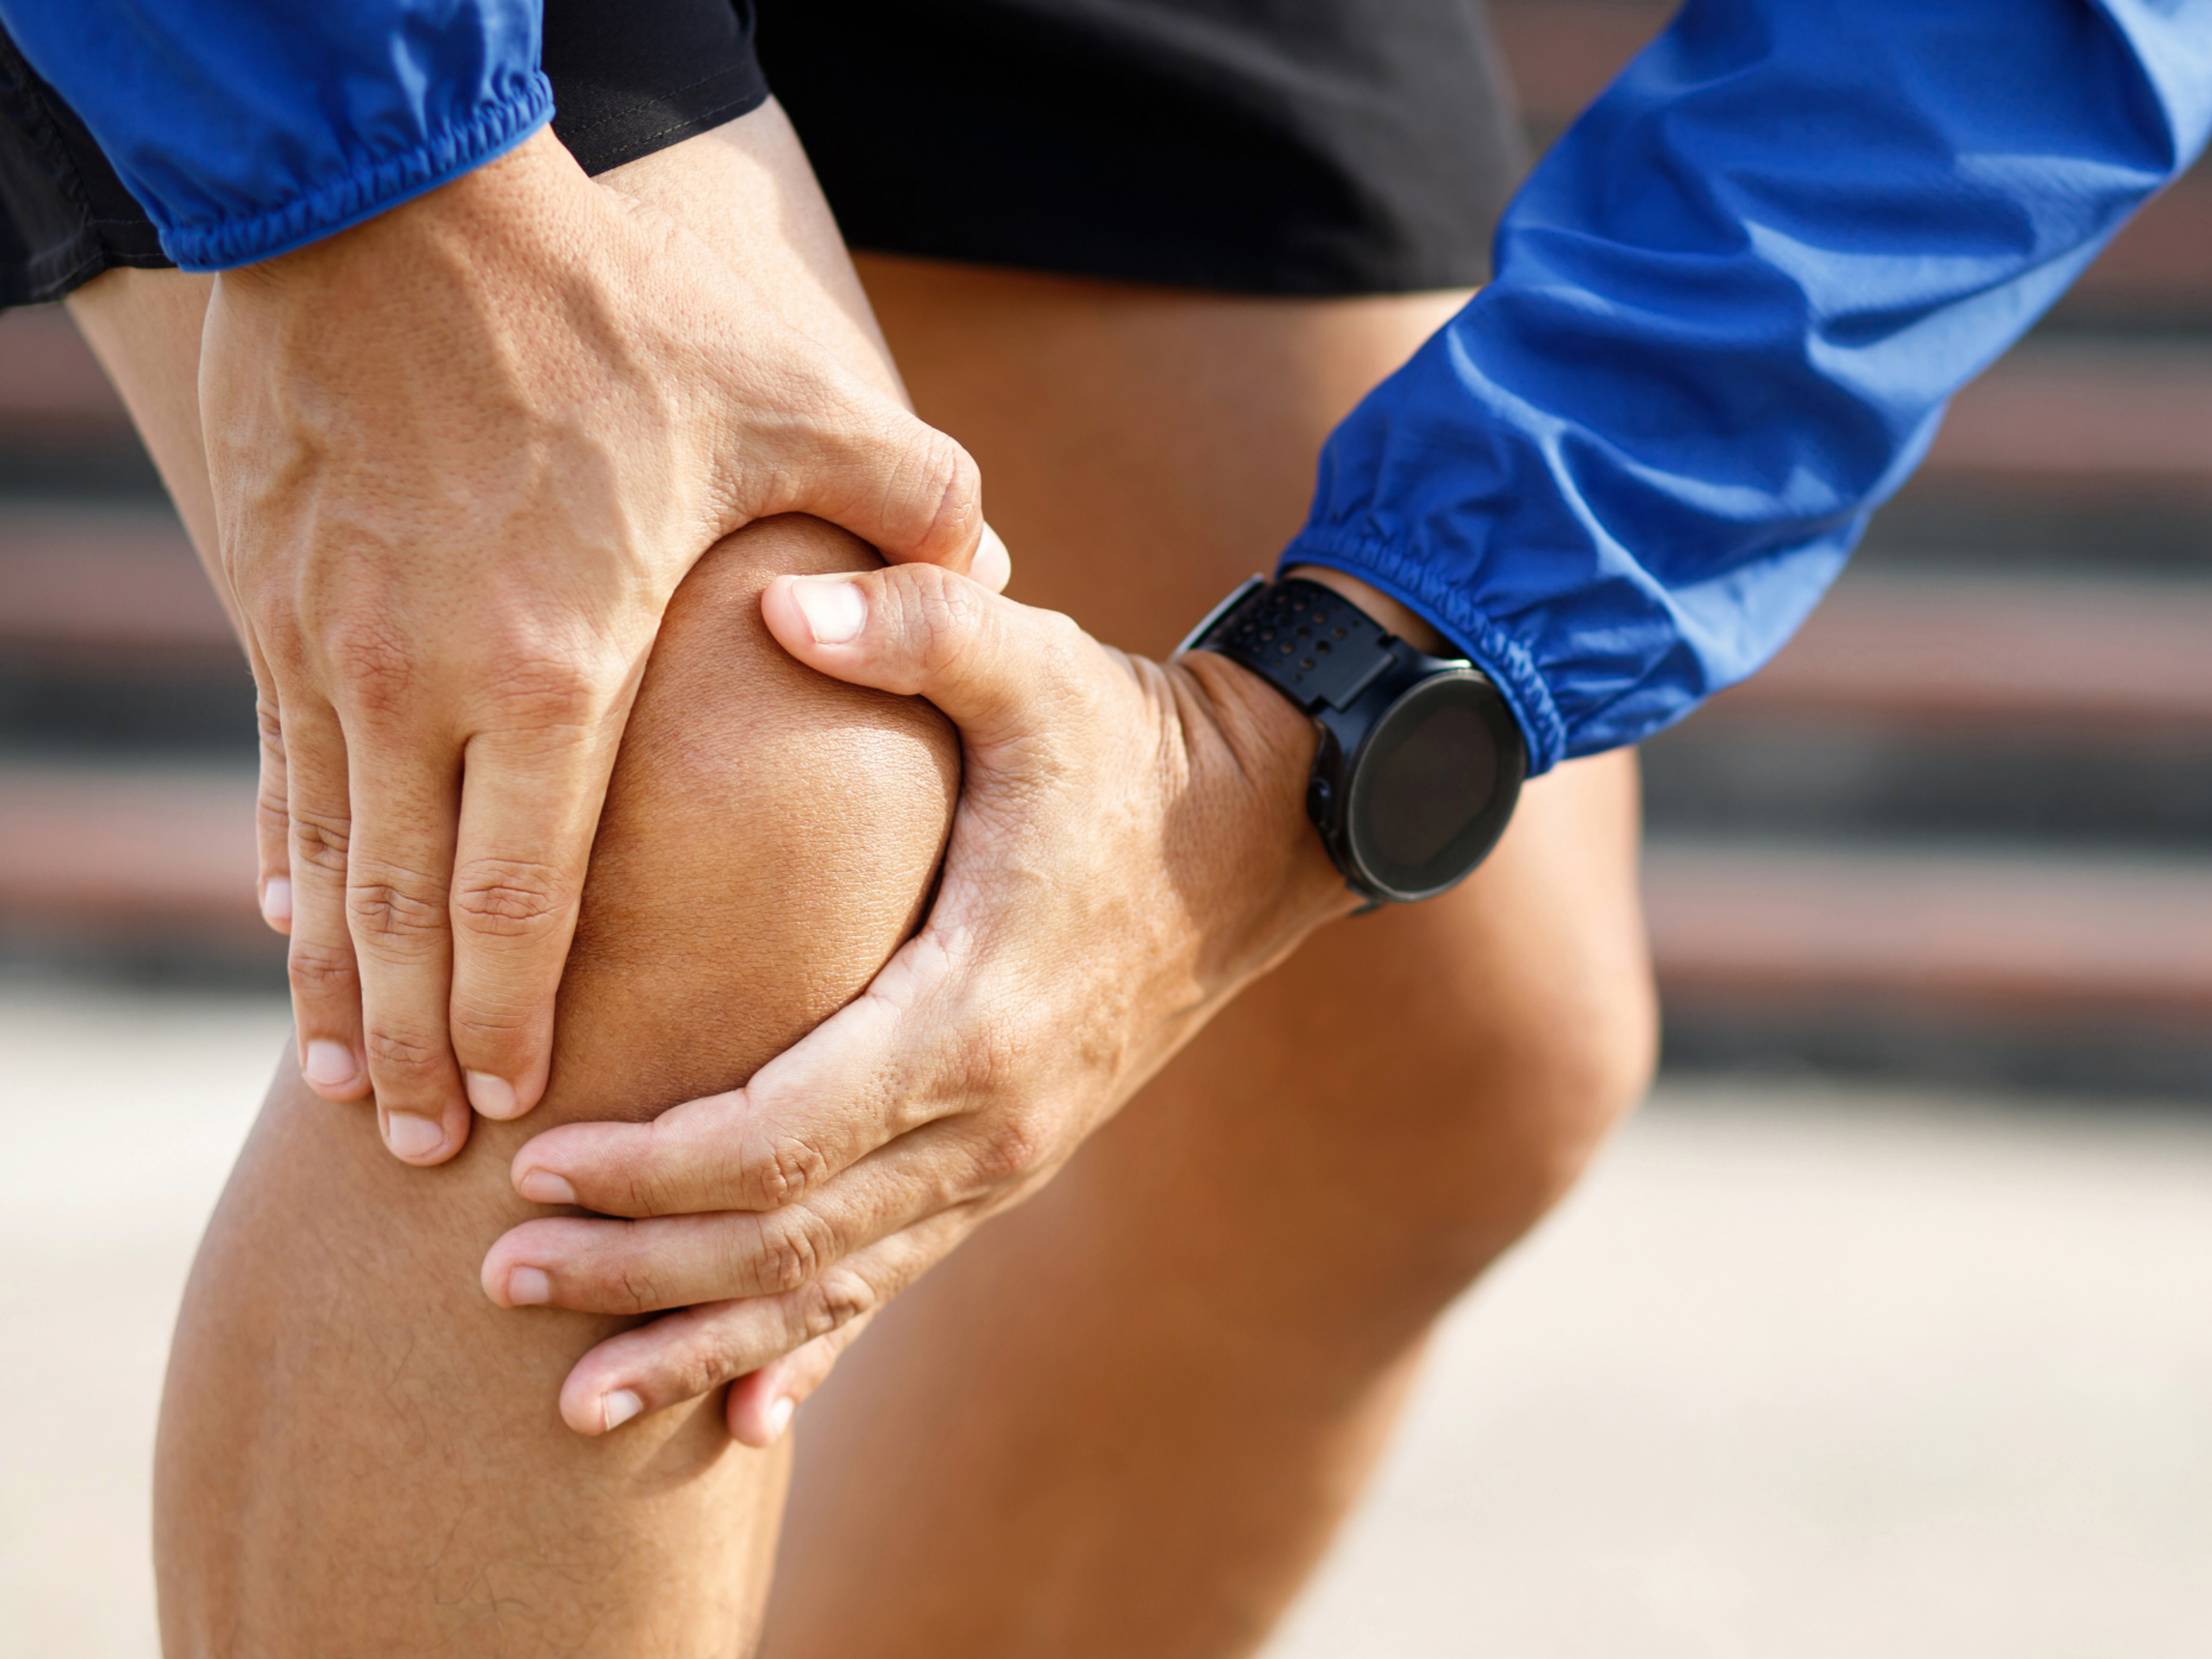 Douleur au genou - Traiter la cause, pas les symptômes